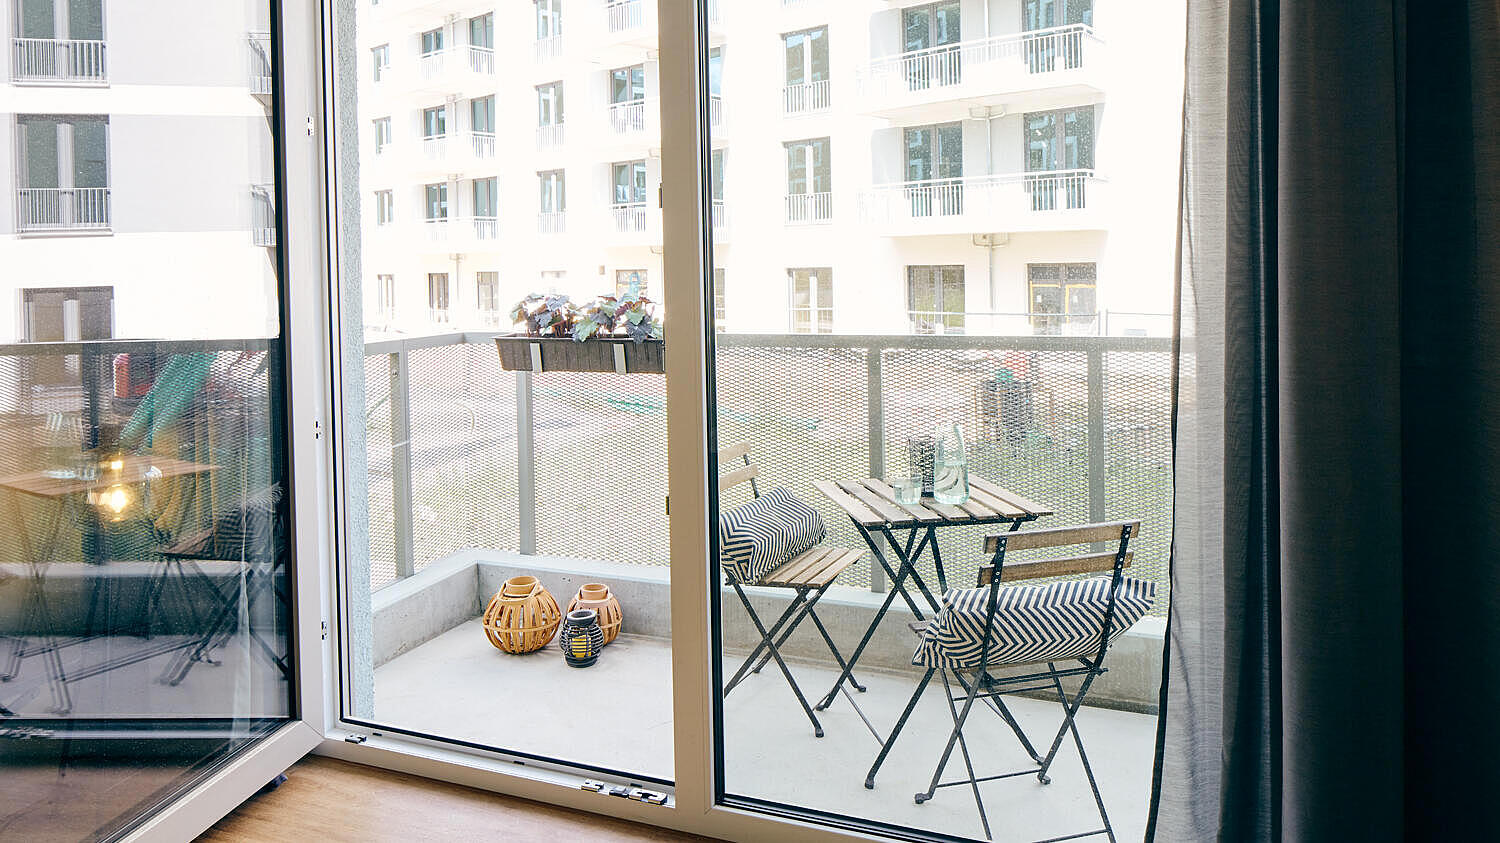 Musterwohnung im Quartier Stadtgut Hellersdorf: Blick auf die Terrasse